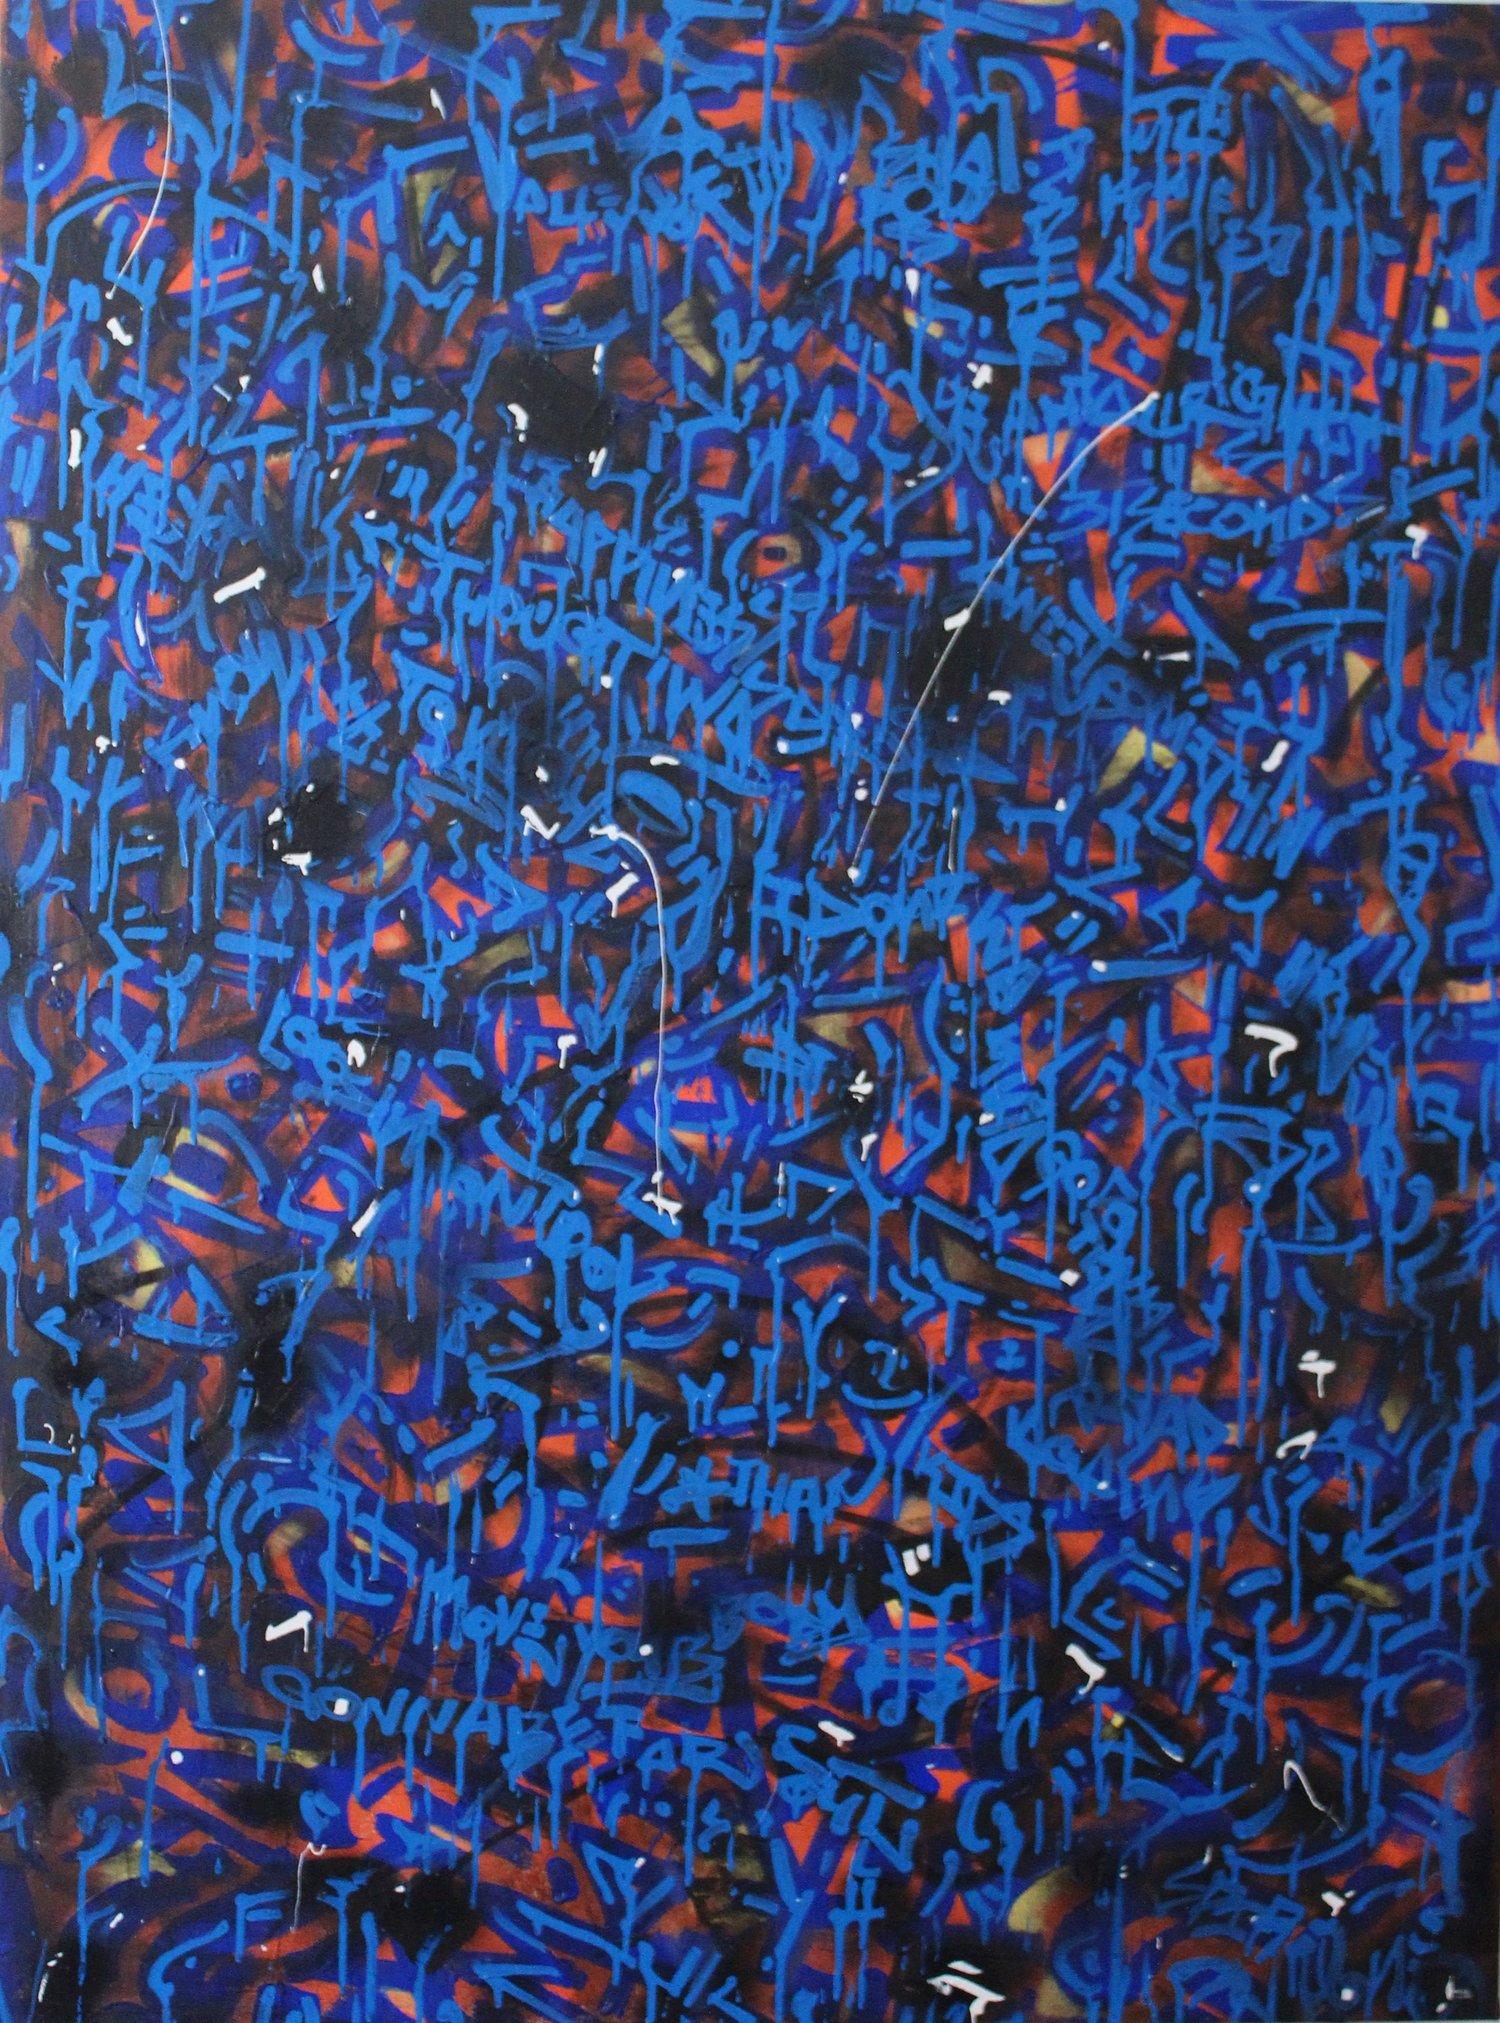 Matthew Spire Abstract Painting – „“Wasser über Feuer“, Graffiti- und Street Art-Gemälde mit blauem Text